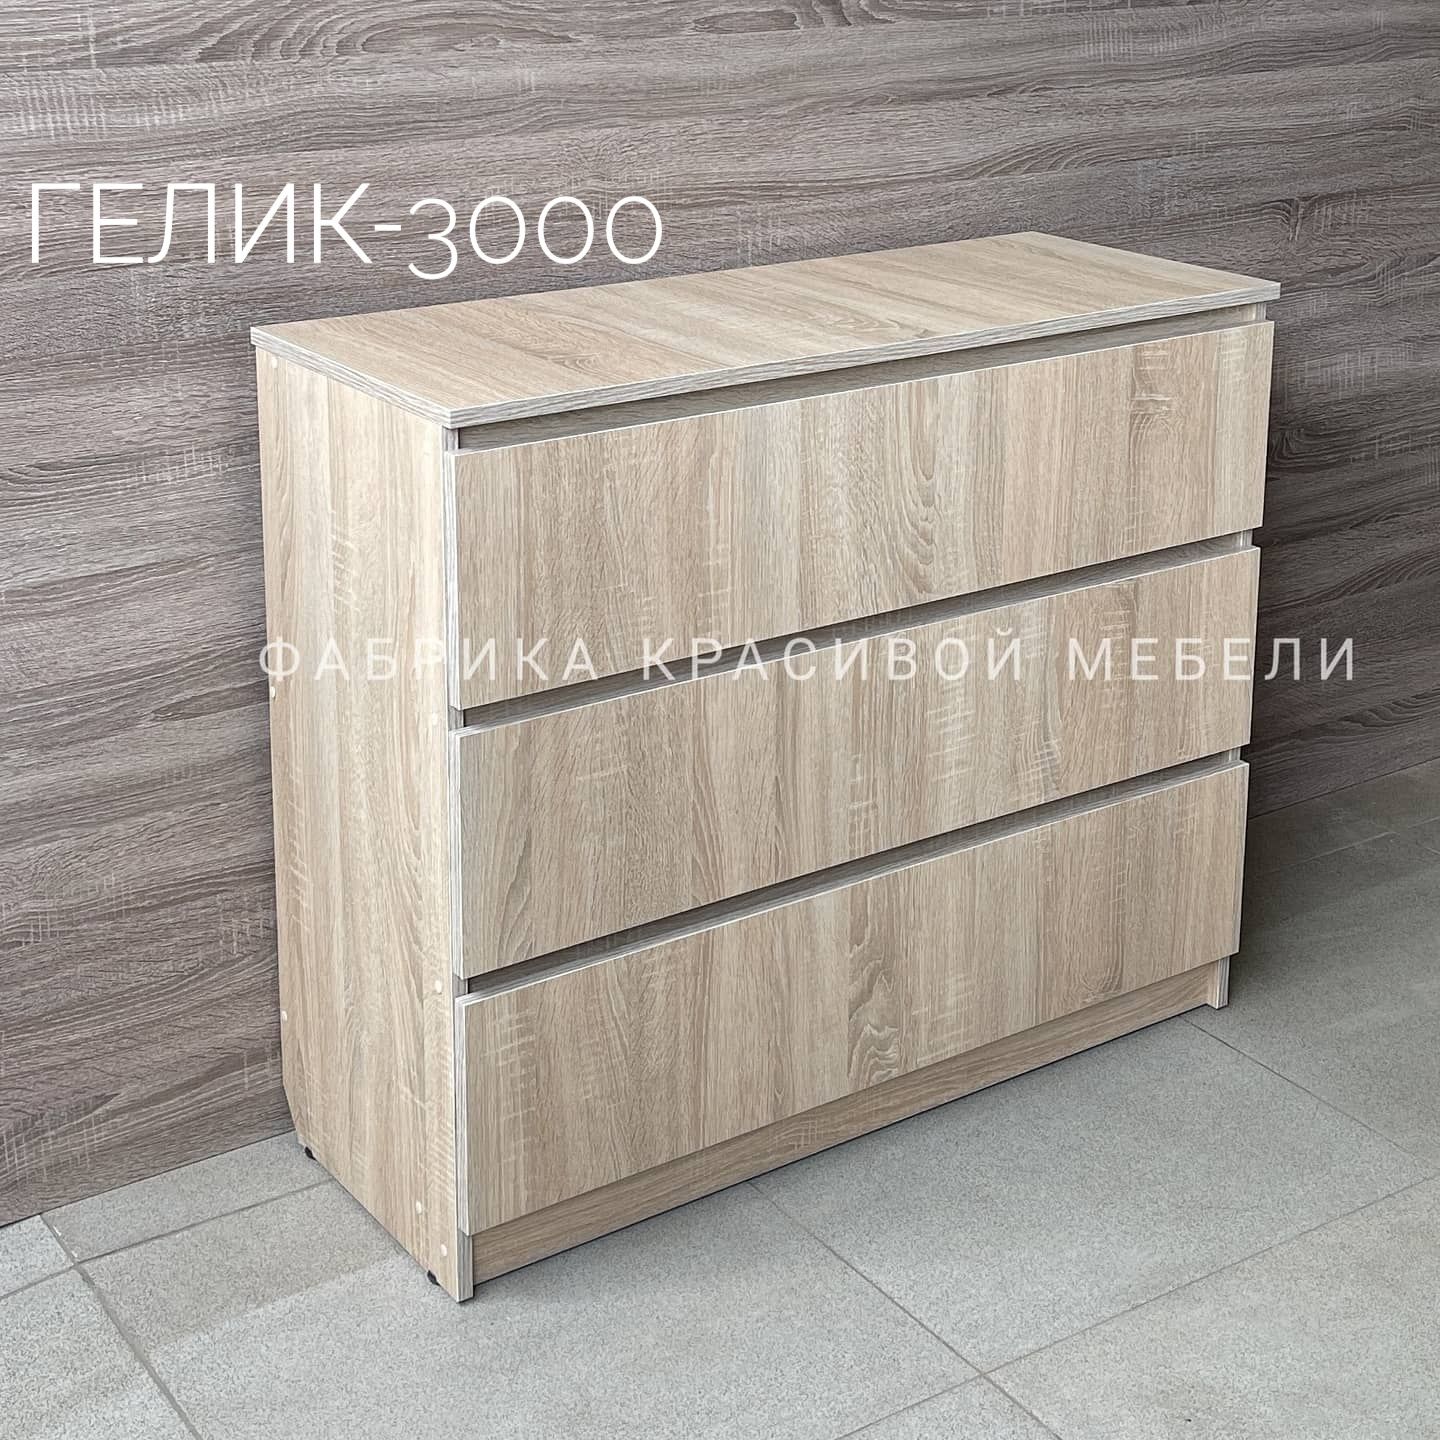 Комод Гелик - 4000 от производителя. Пеленальный столик, пеленатор